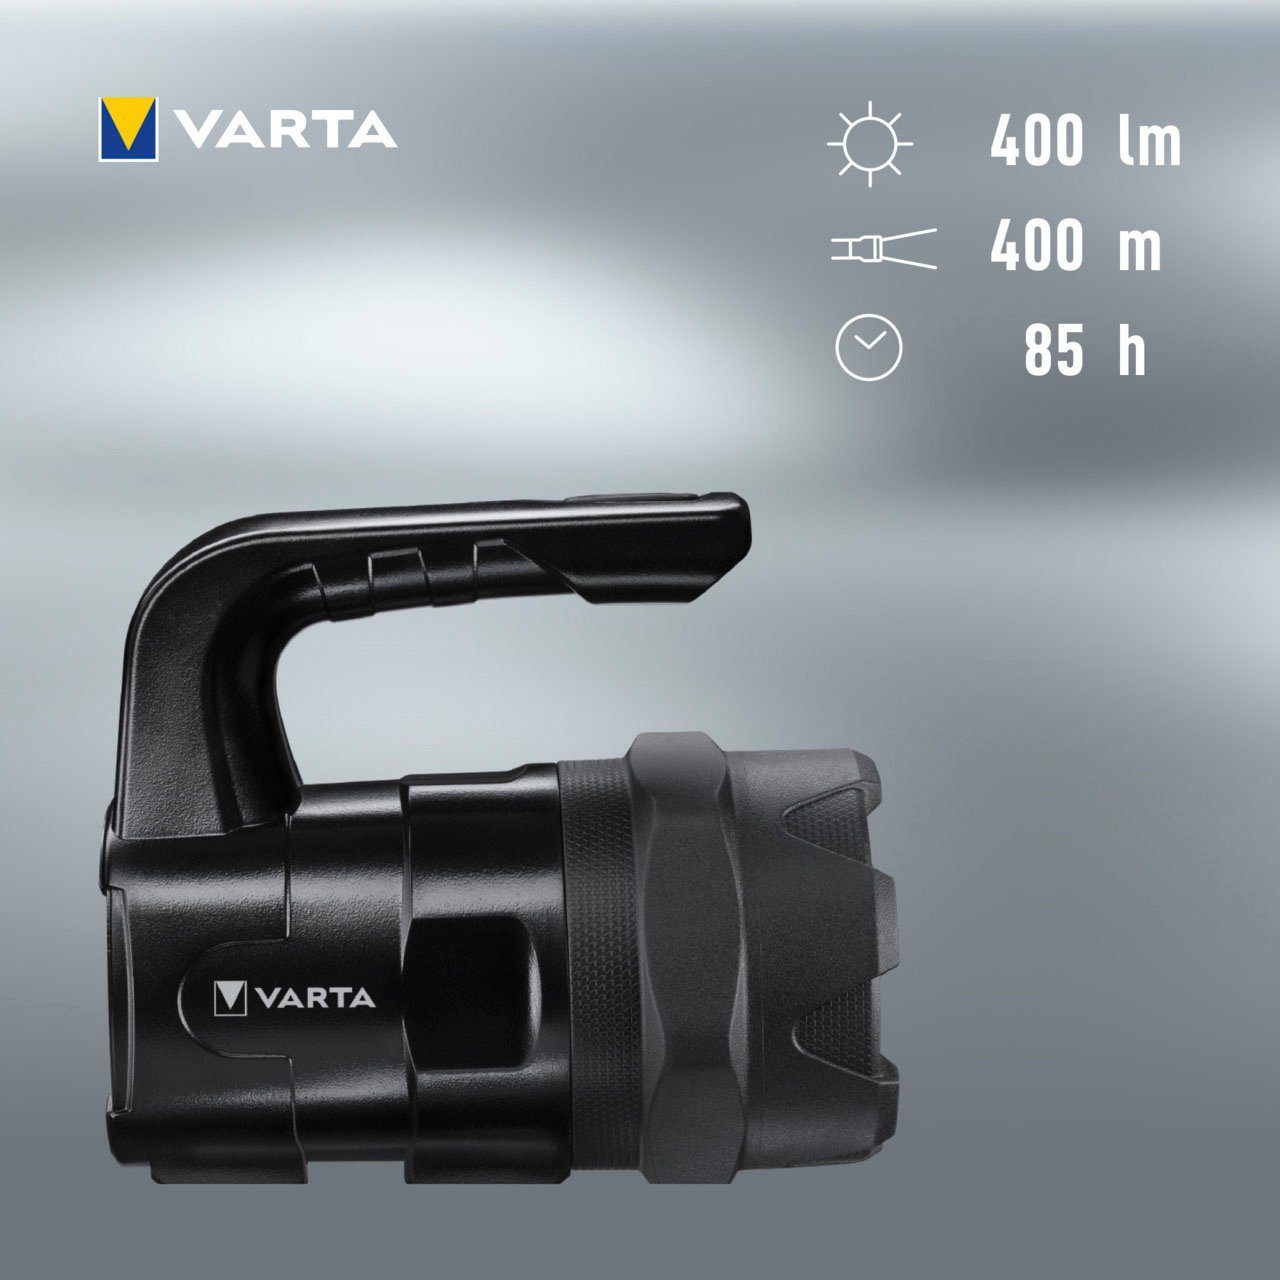 VARTA Taschenlampe BL20 (7-St), Watt Pro 6 wasser- LED Gehäuse staubdicht, eloxiertes Indestructible und stoßabsorbierend, Aluminium